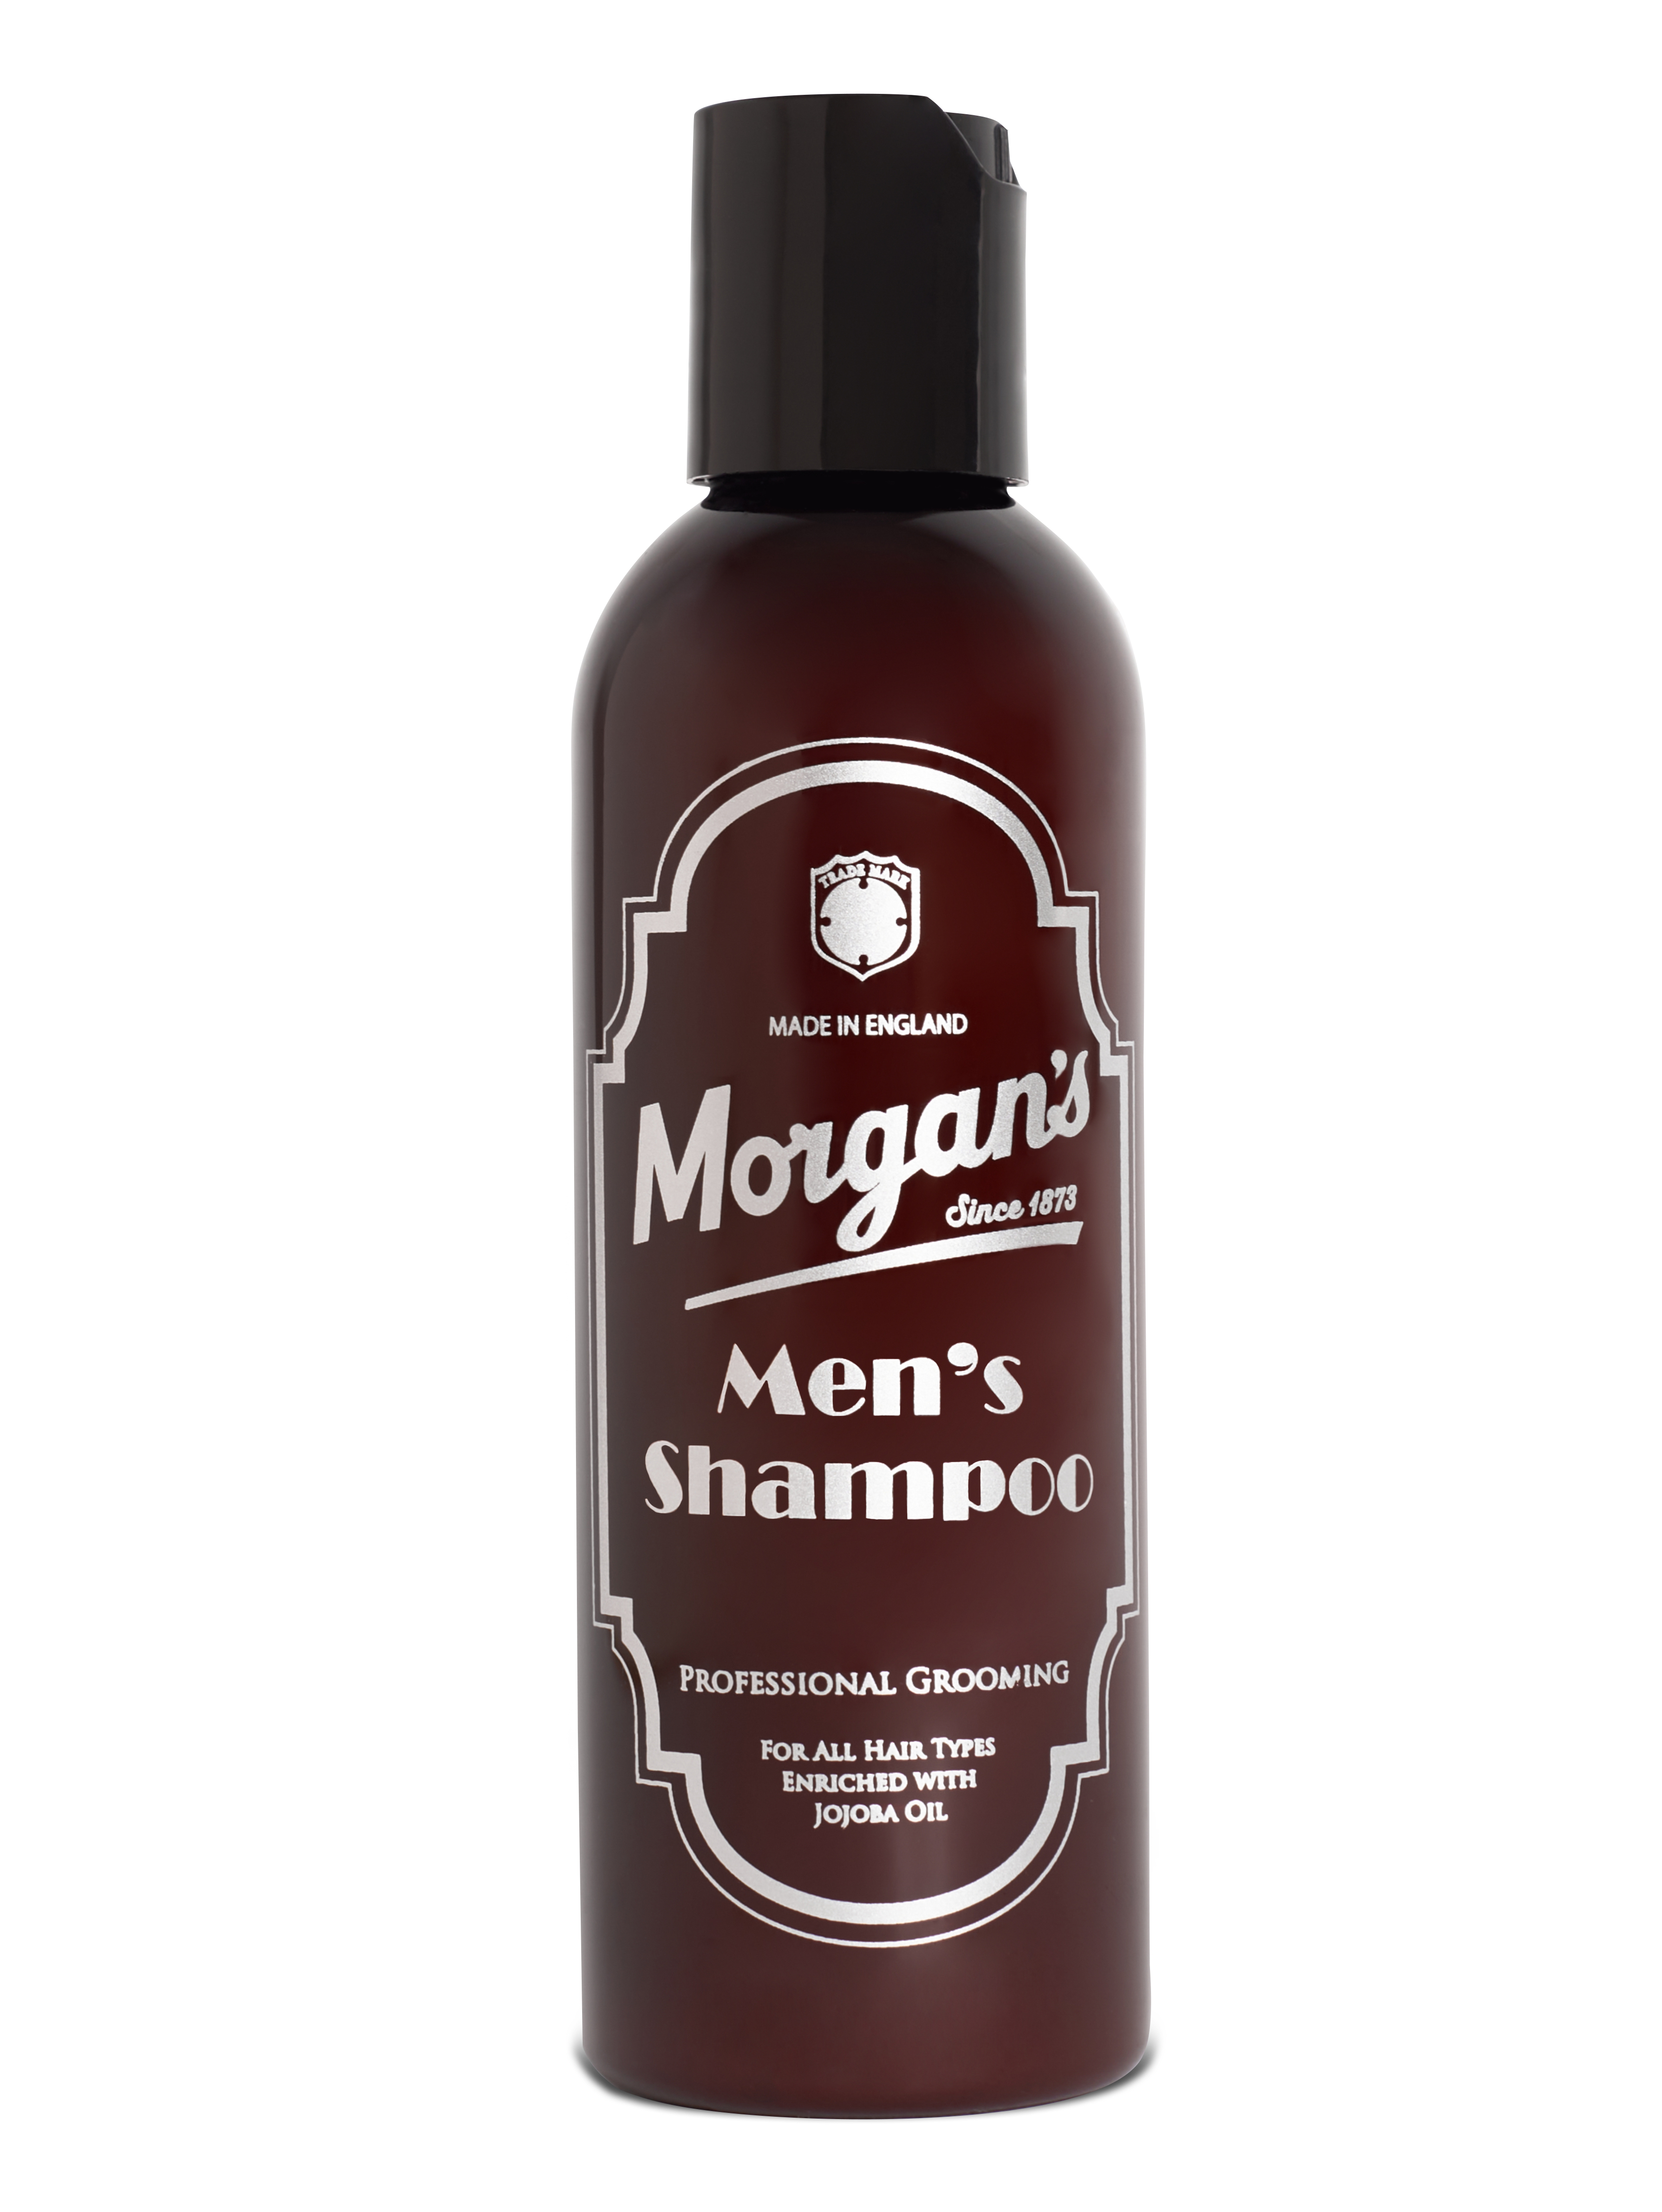 Мужской шампунь Morgan’s для ежедневного использования 100 мл мужской гель для душа тонизирующий doccia shampoo